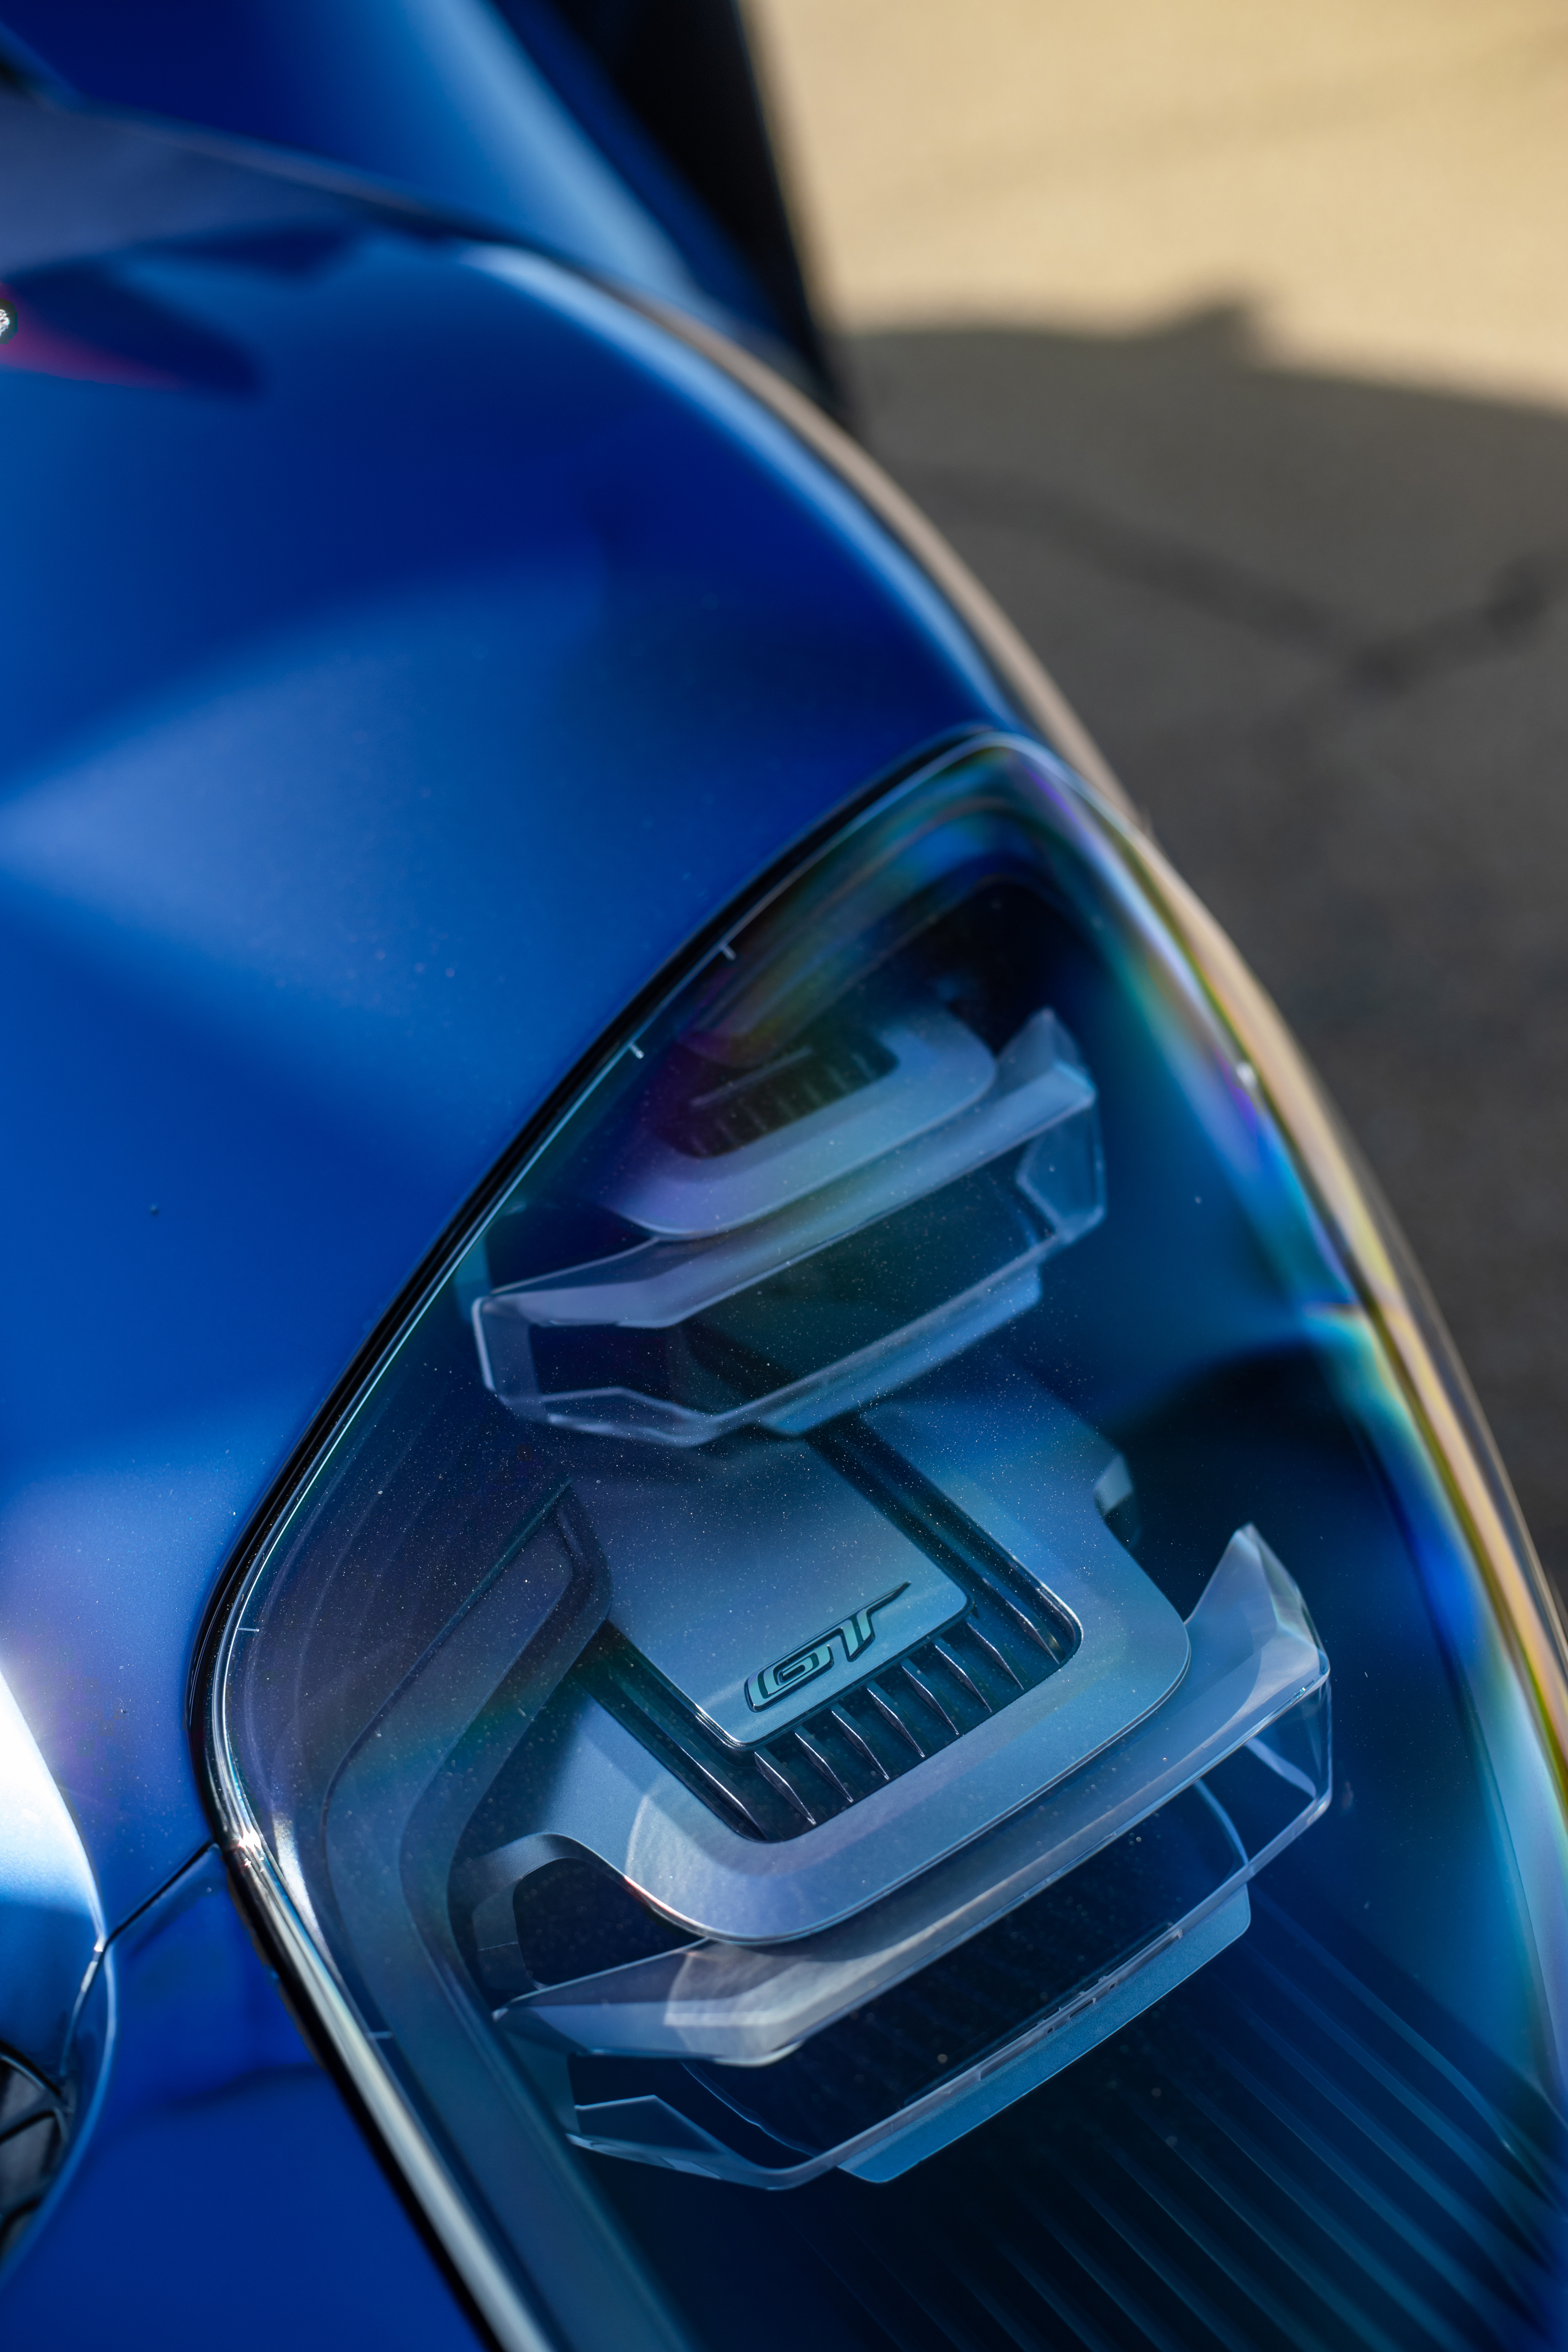 2019 Ford GT Carbon Series Headlight laocexotics